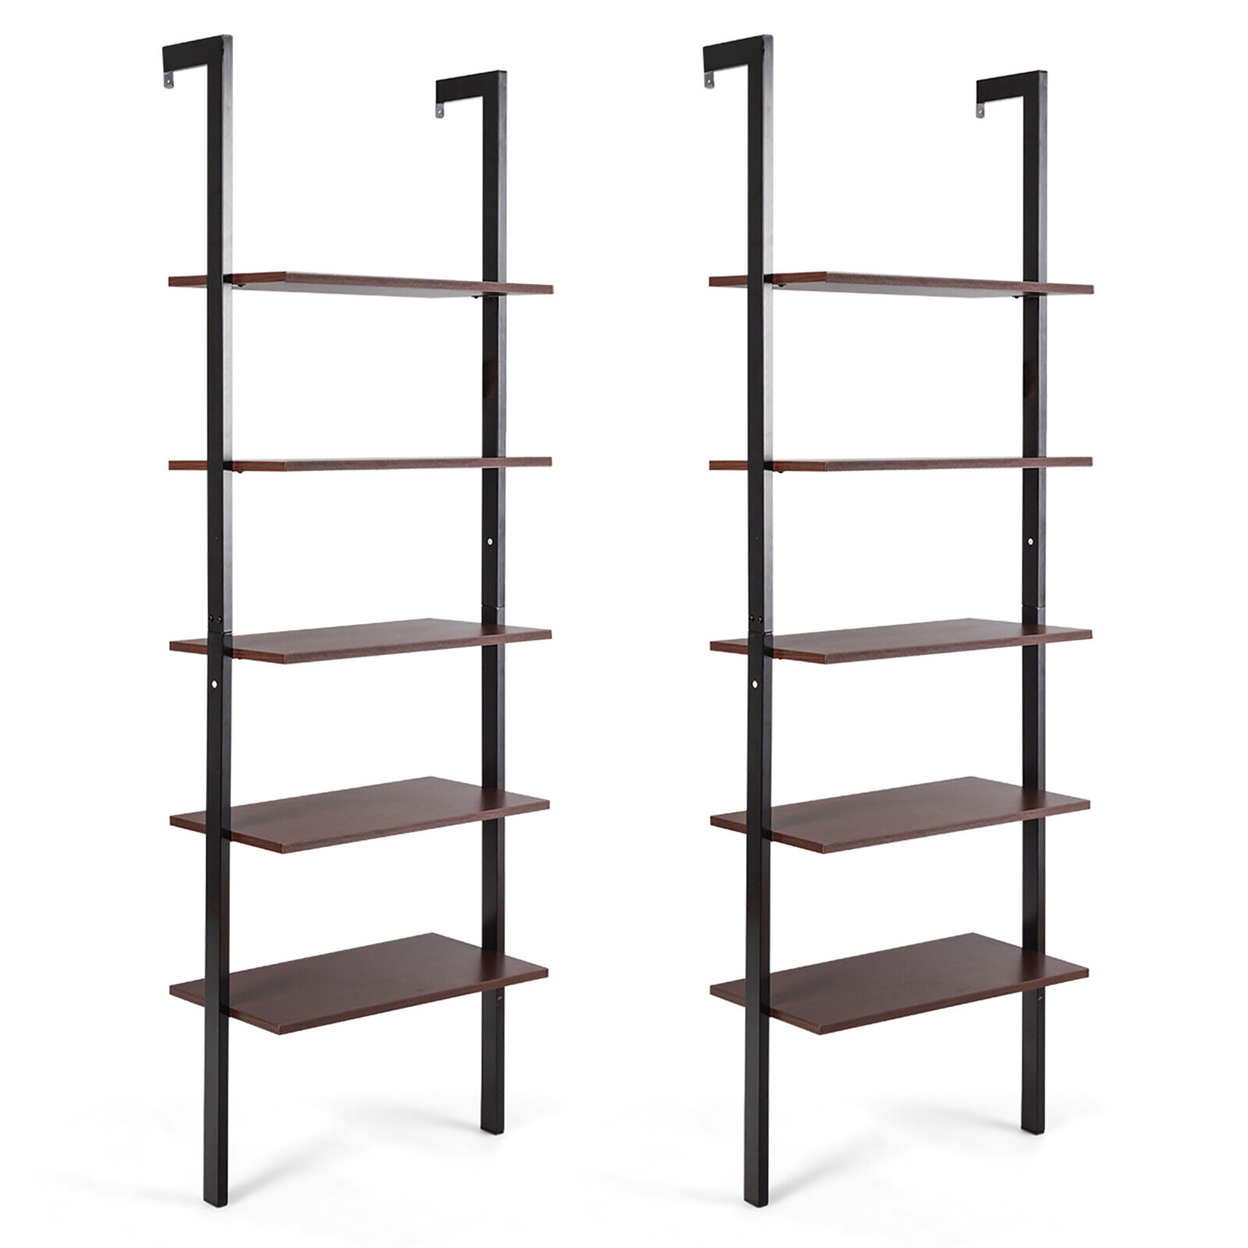 2PCS 5-Tier Ladder Shelf Wood Wall Mounted Display Bookshelf Metal Frame - Black, Brown